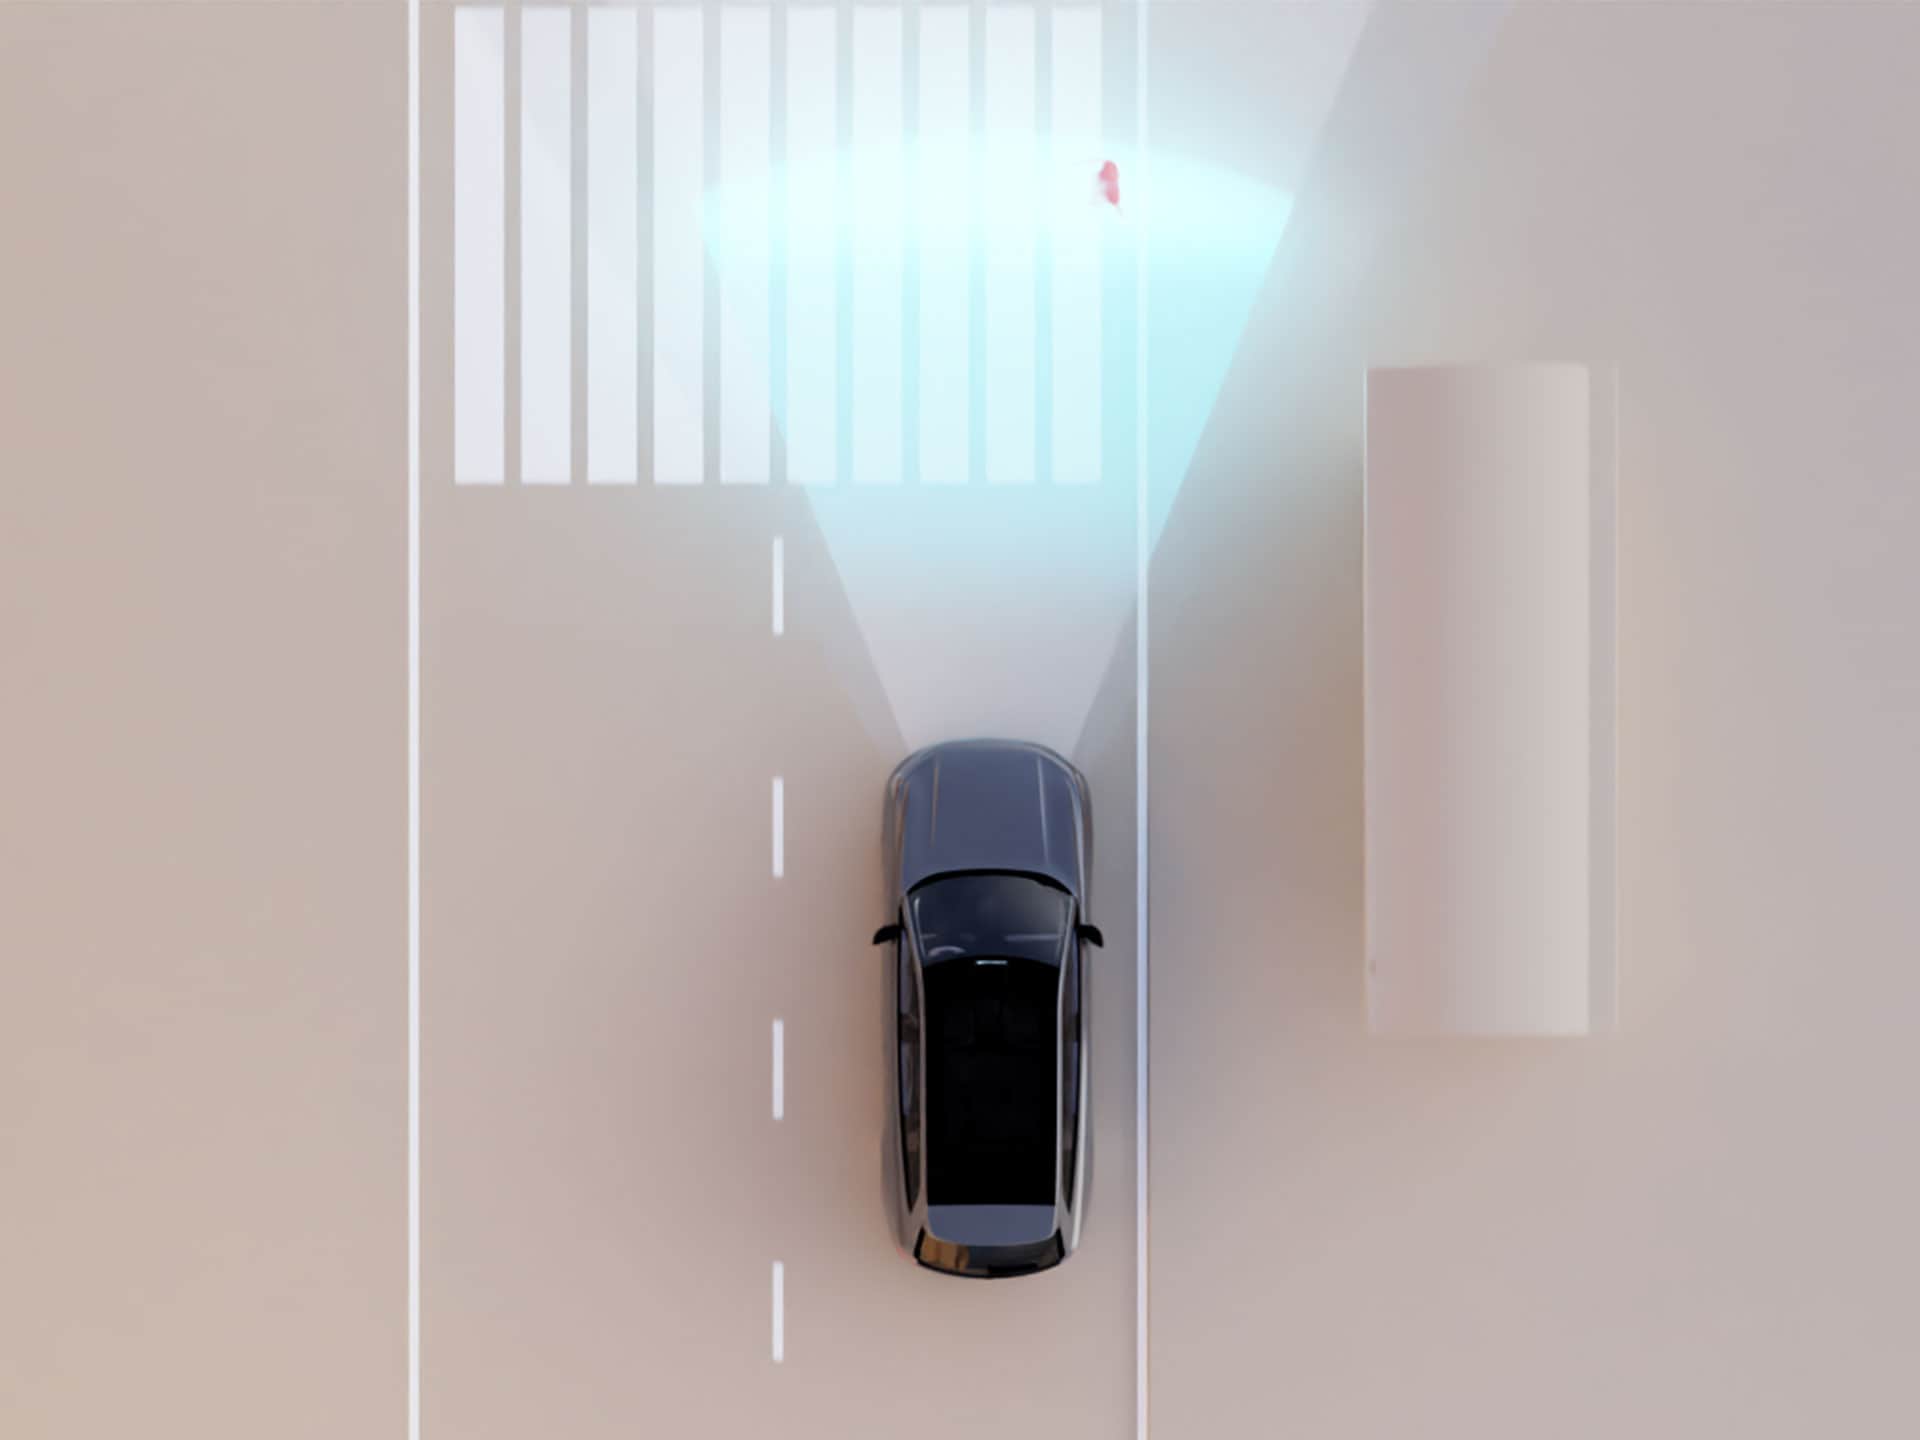 Ilustrace technologie společnosti Volvo Cars rozpoznávající chodce na přechodu.